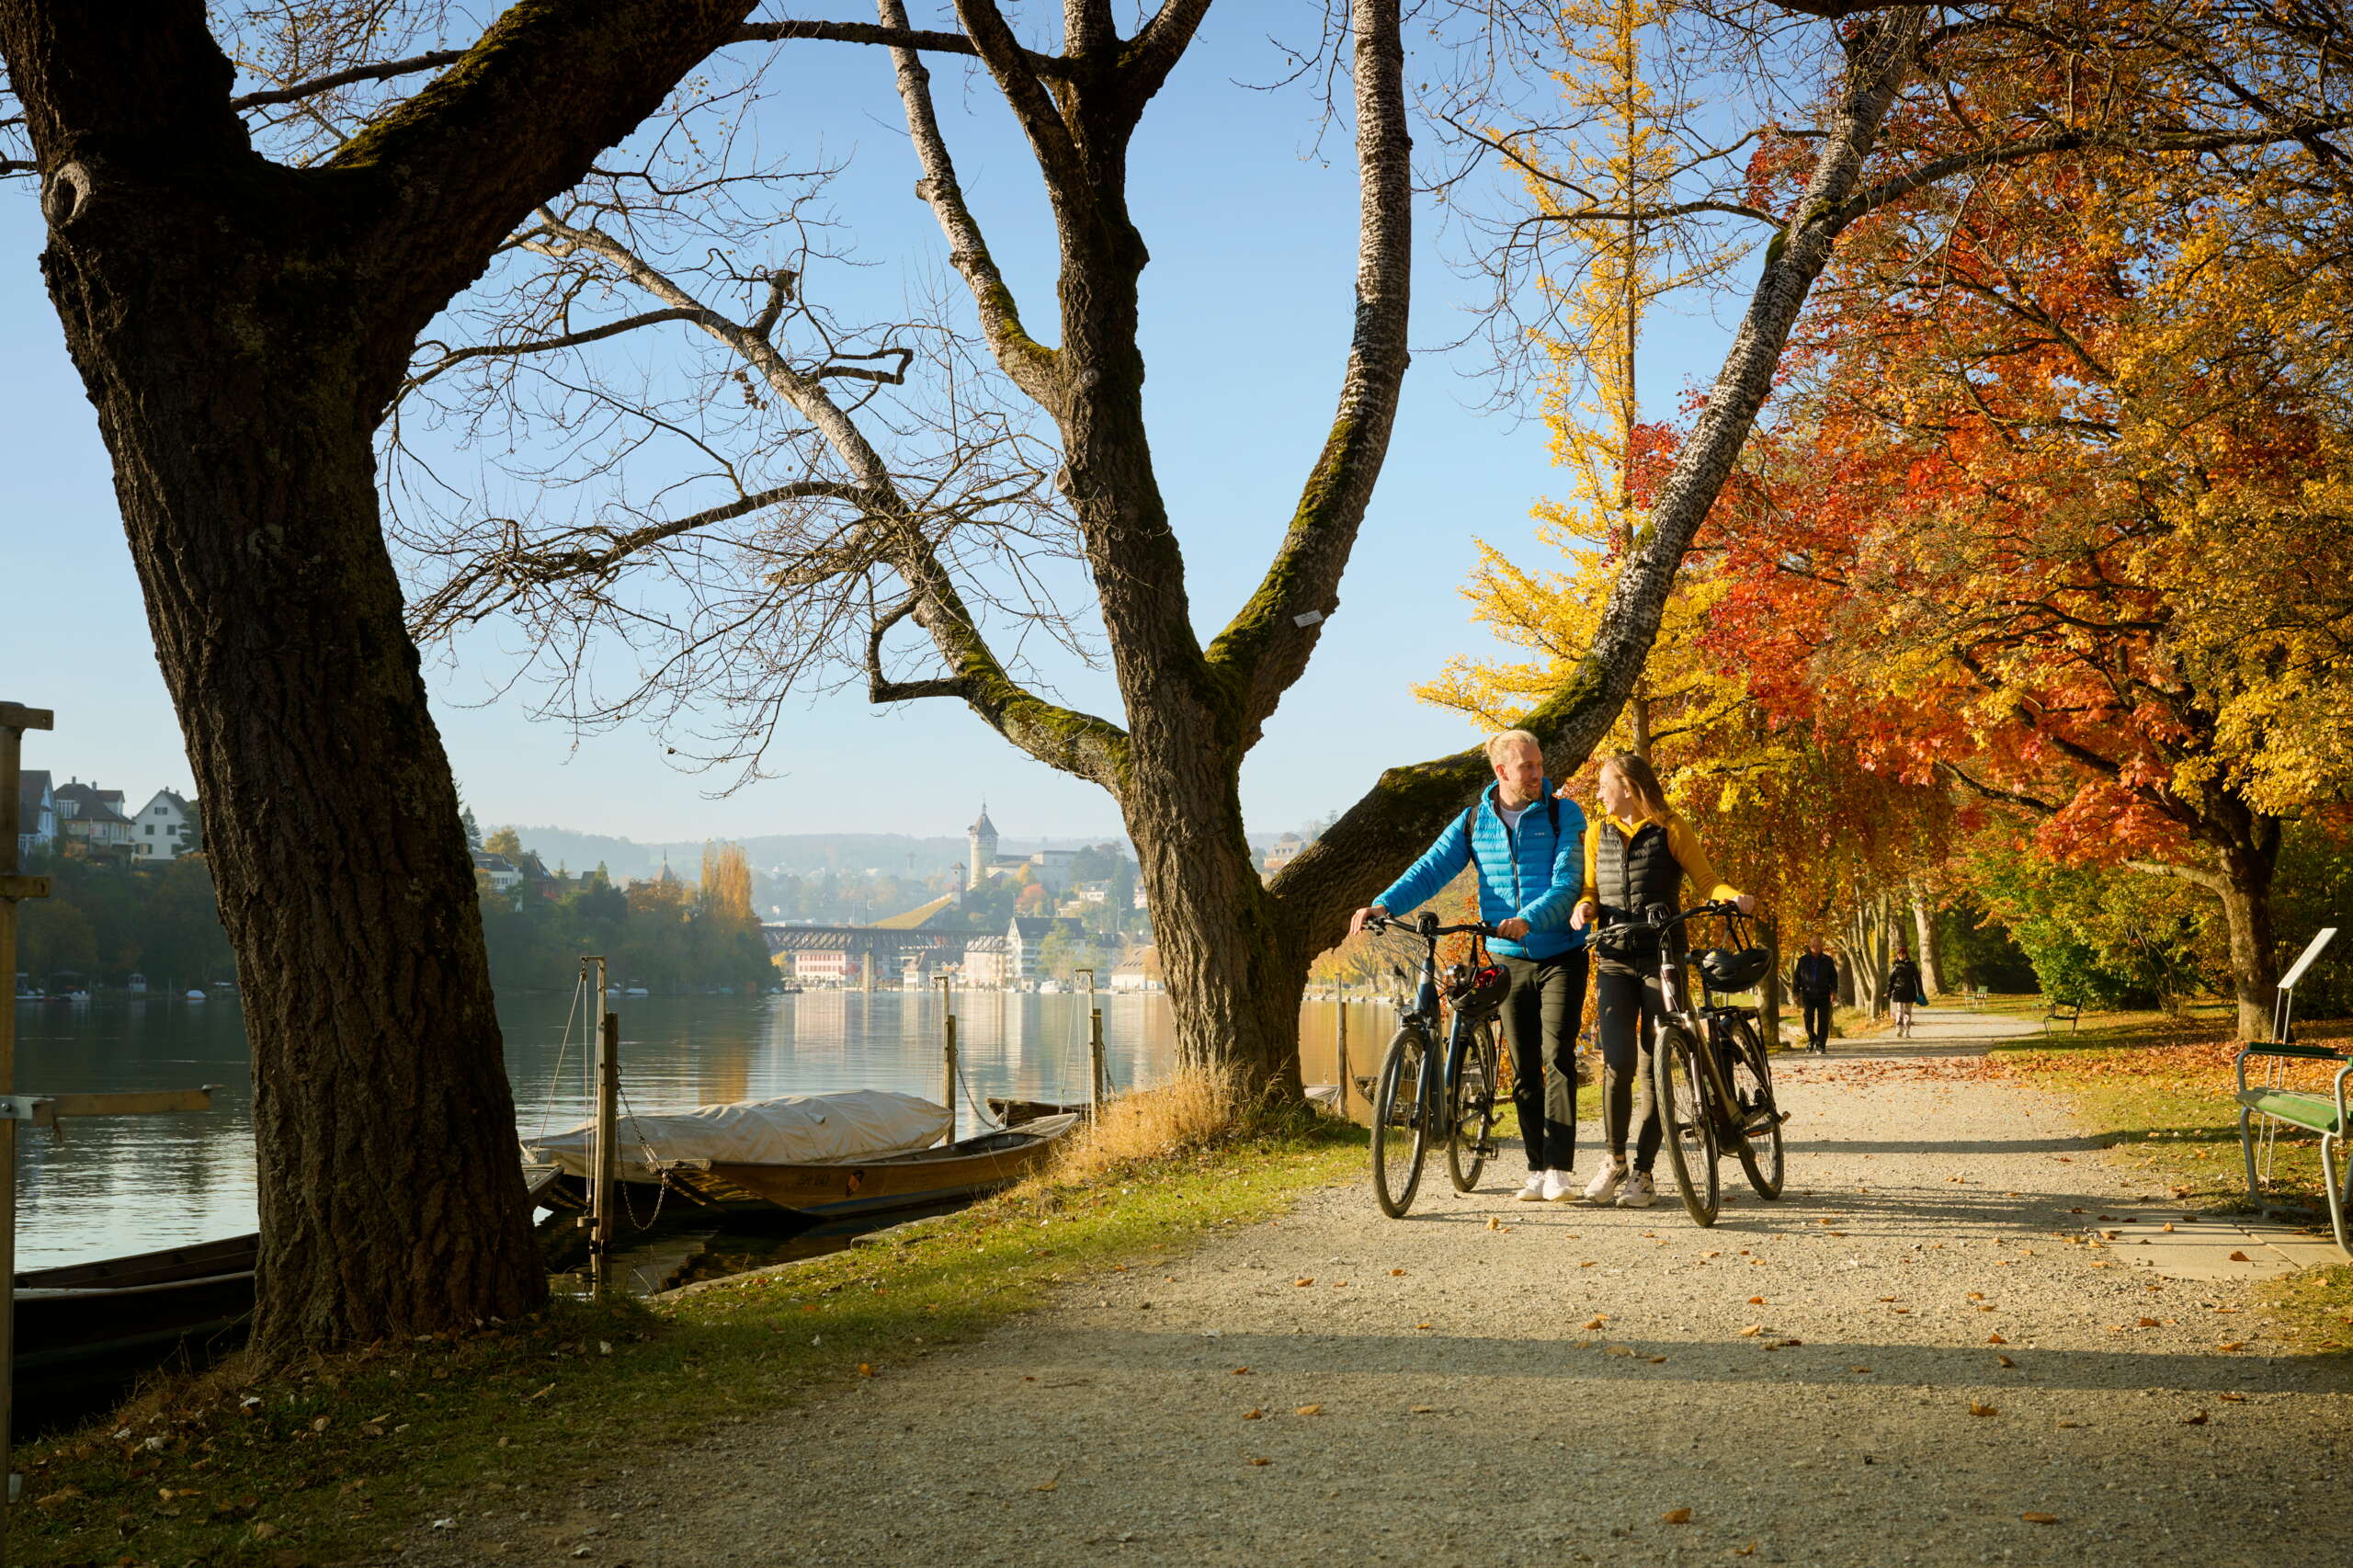 Ein Päärchen welches die Räder schiebt und den goldenen Herbst am Rhein geniesst und der Uferpromenade entlang schlendert.